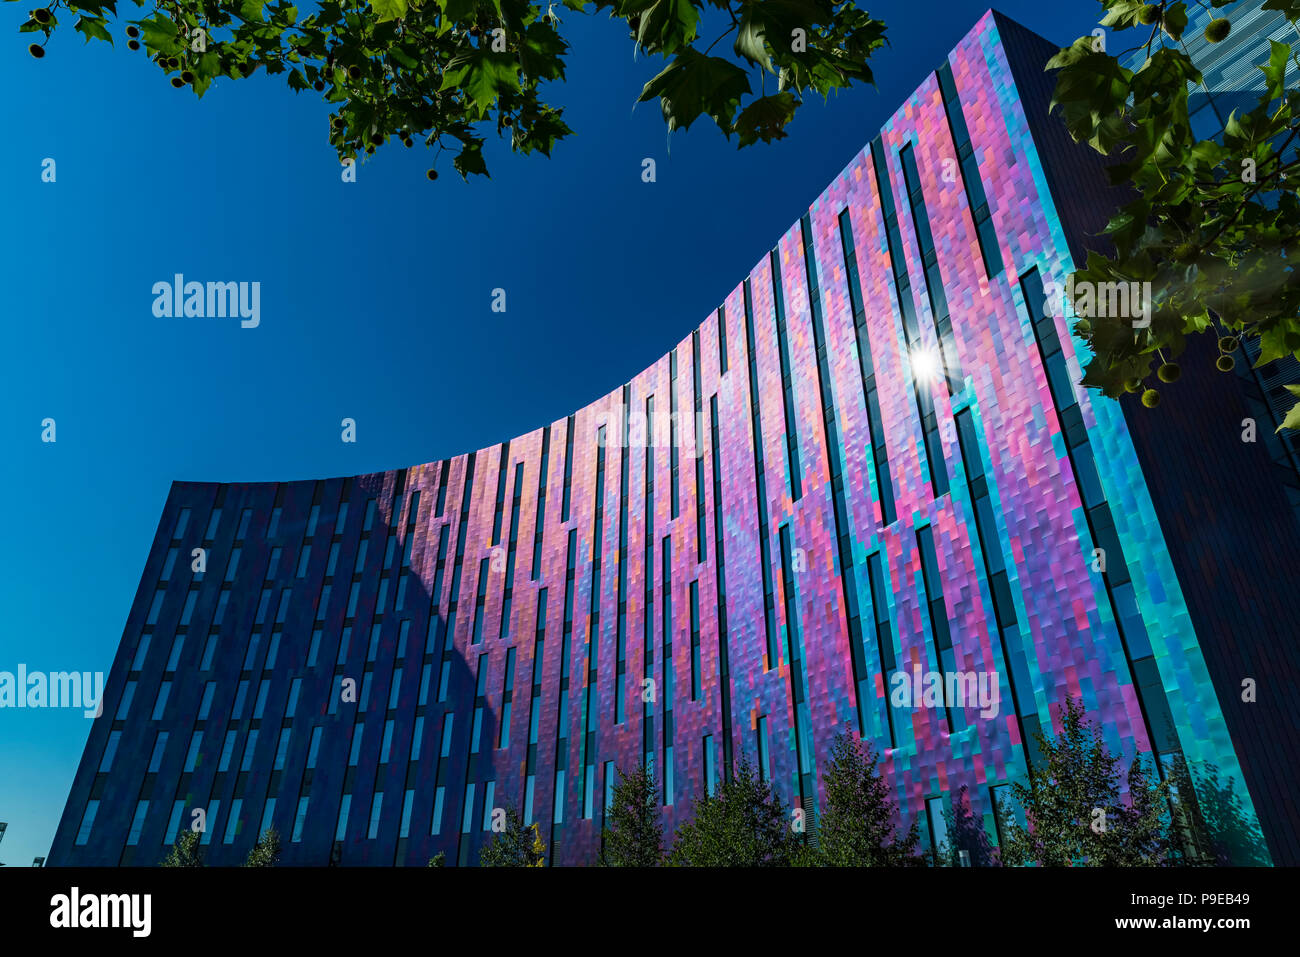 London, UK - 15. Juli 2018: Die Excel-datei, einem Zentrum für Ausstellungen und International Convention Center helle und farbenfrohe Fassade des Aloft Hotel Stockfoto